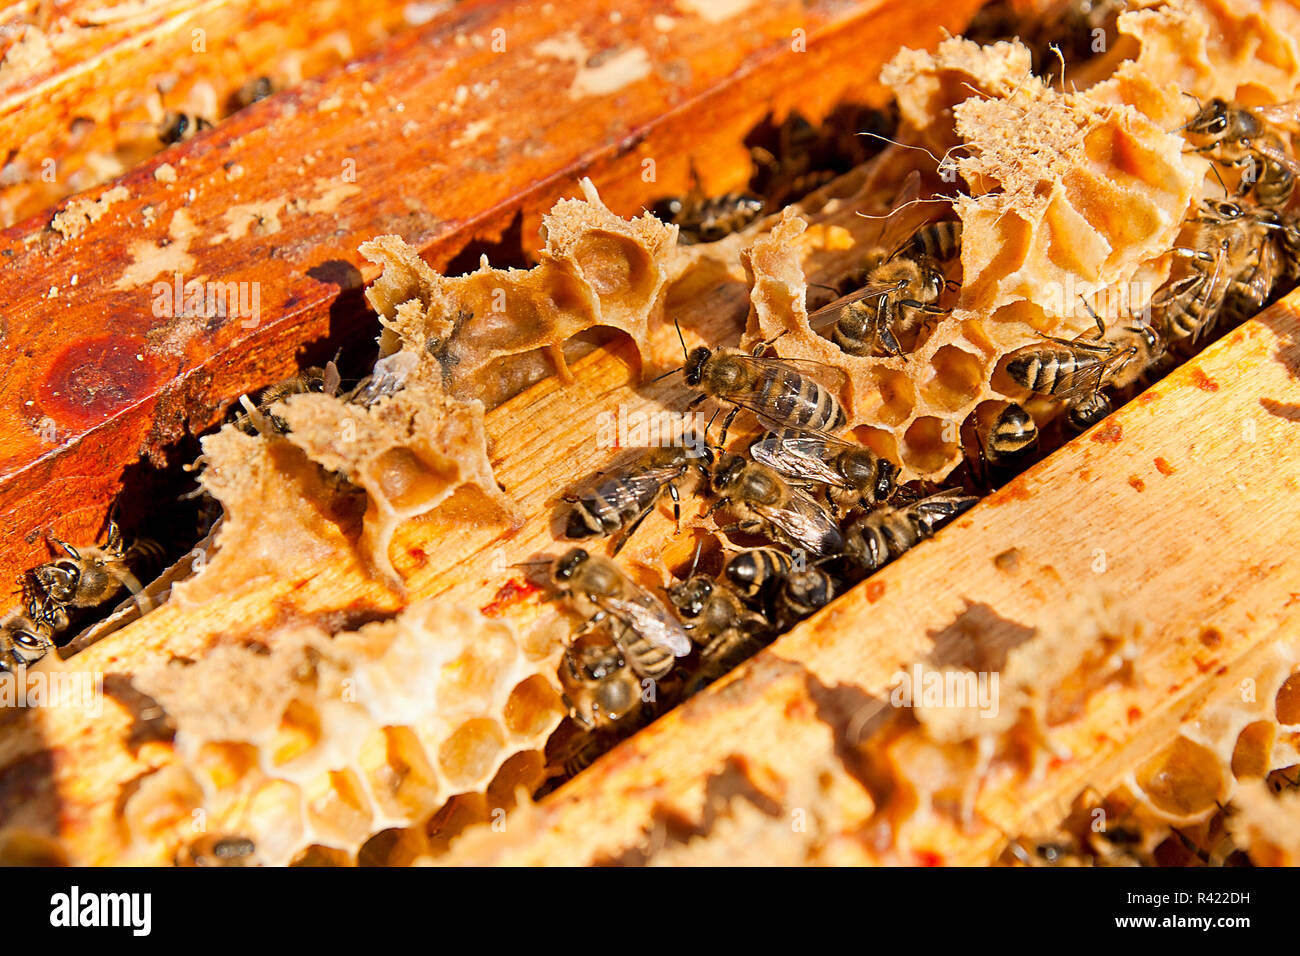 Les abeilles, voir le groupe de travail sur nid d'abeilles. Banque D'Images